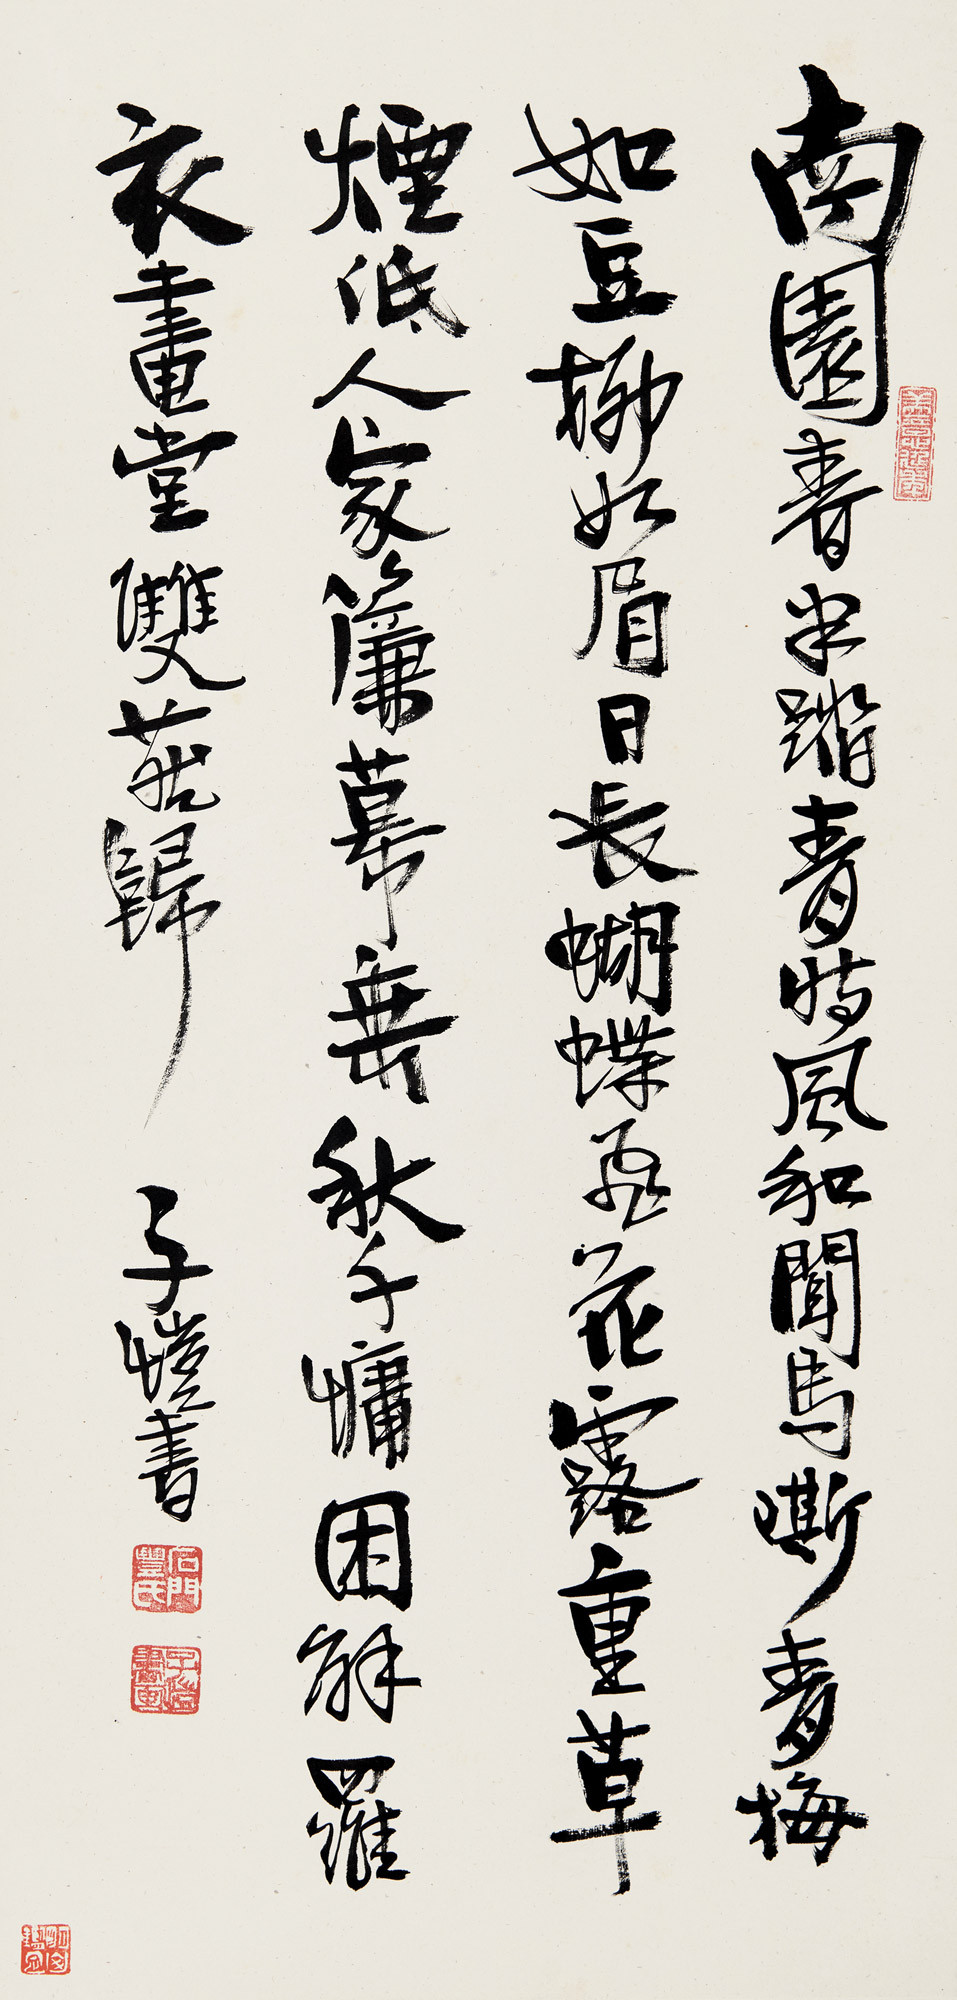 Calligraphic Poem by Ouyang Xiu in Running Script